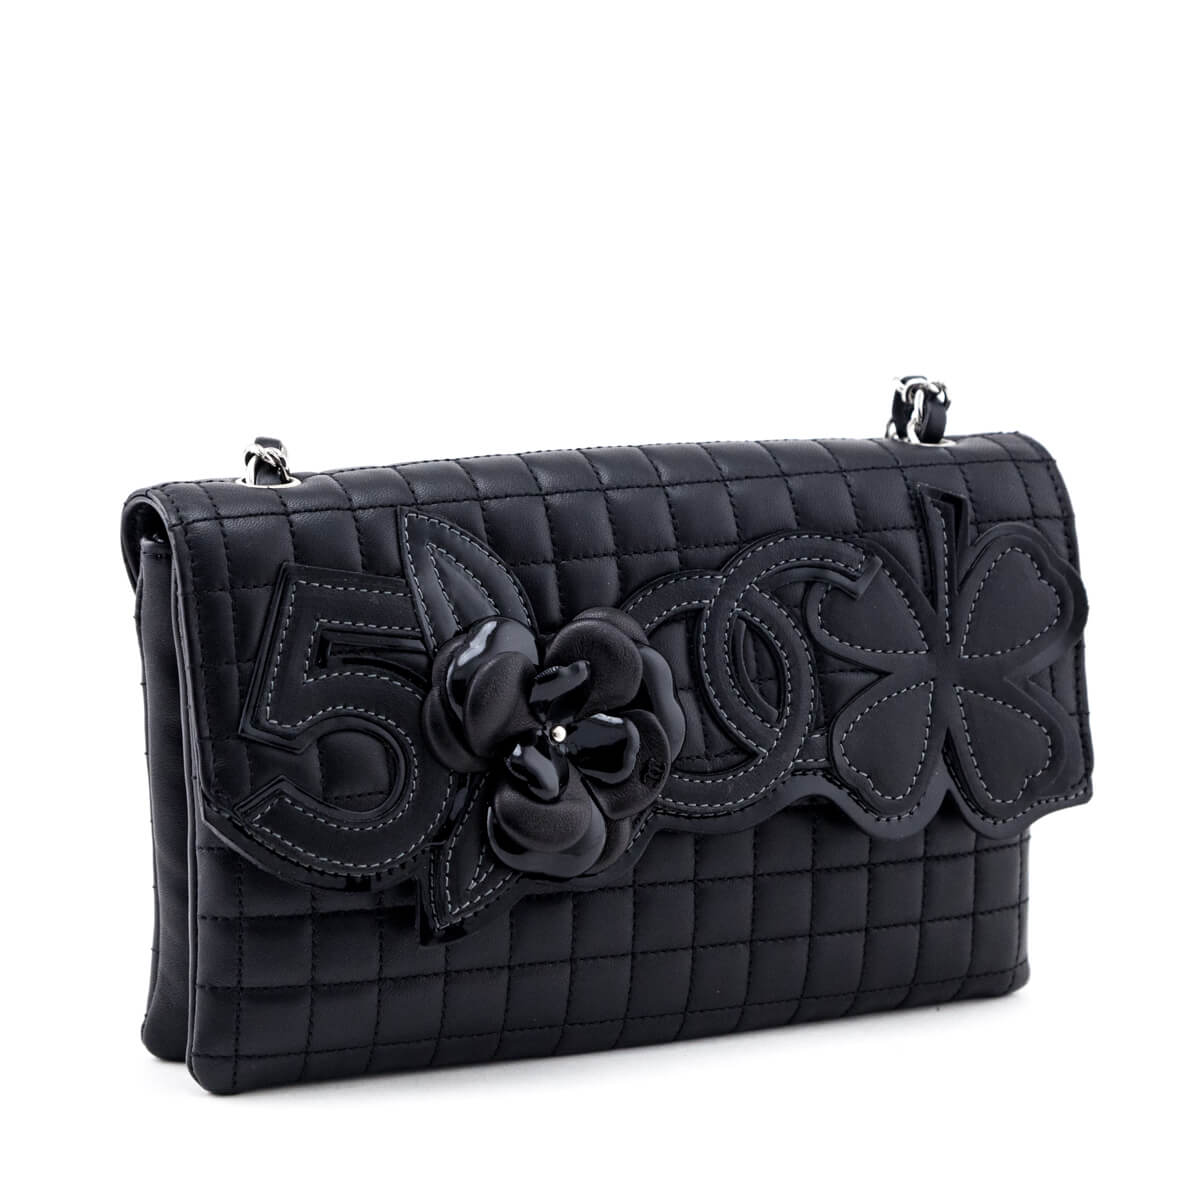 Handbags - Authentic Designer Handbags - Love that Bag etc